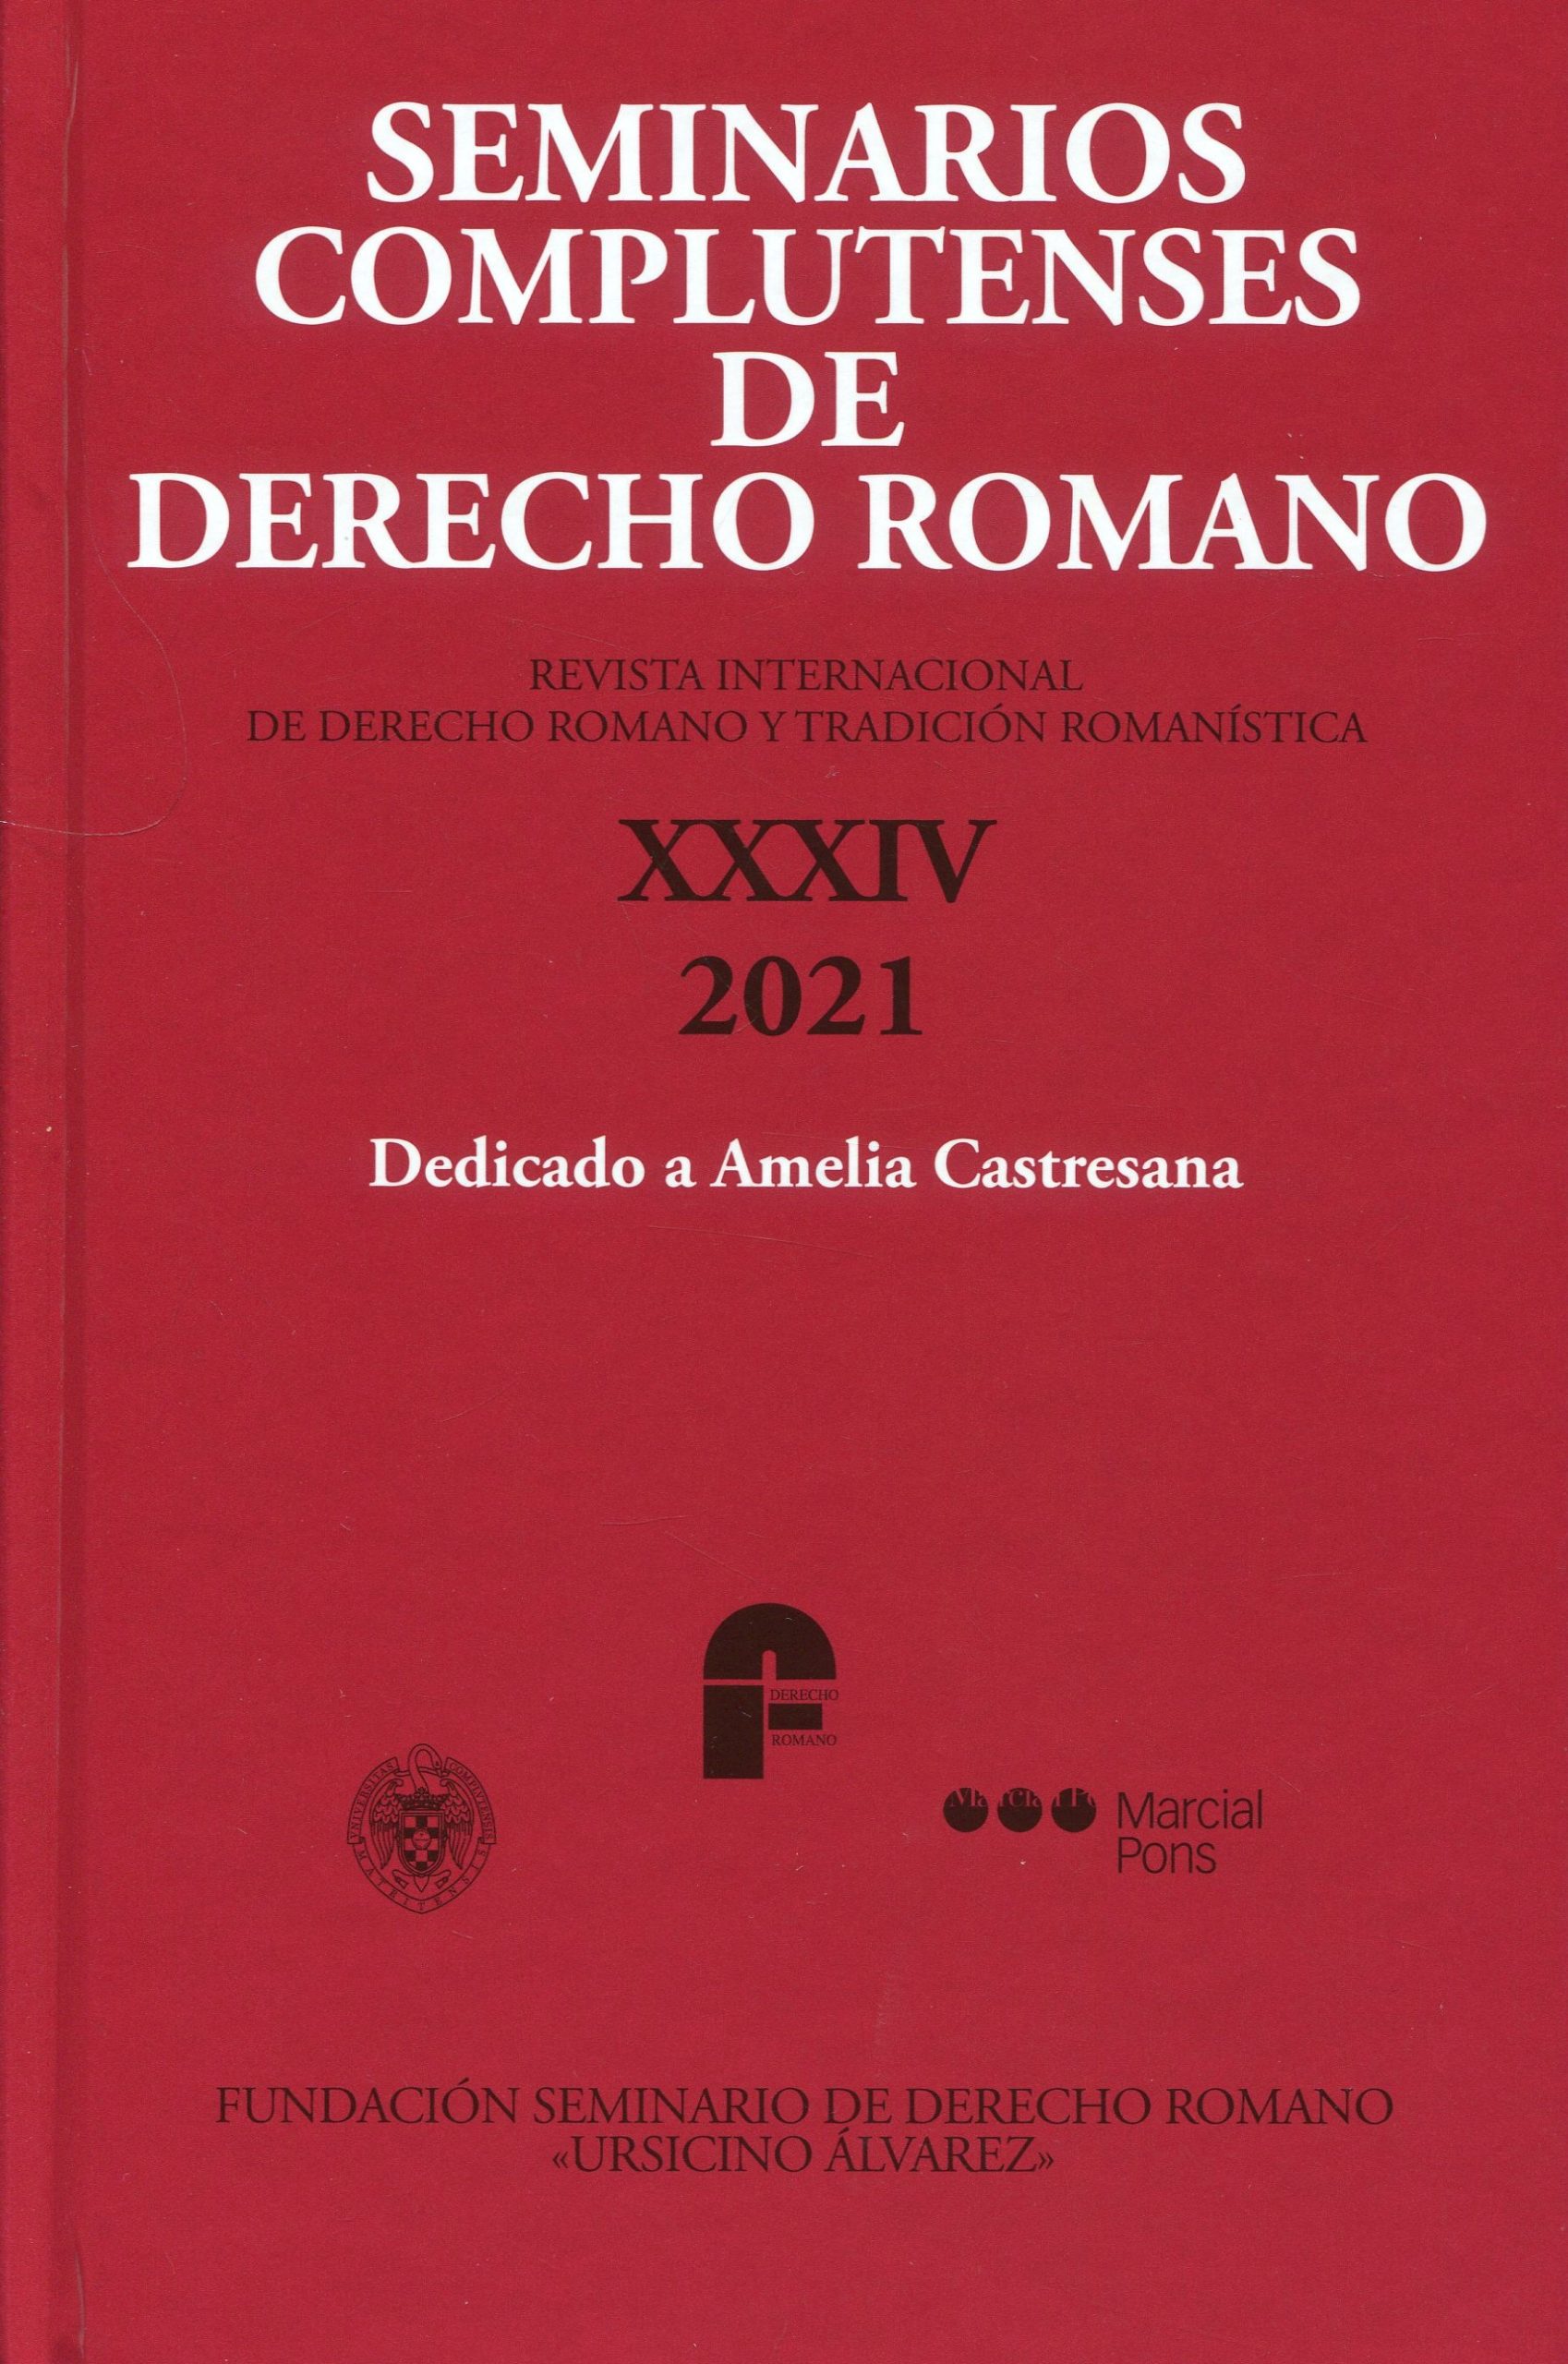 Seminarios complutenses de Derecho romano XXXIX/20219772120357673